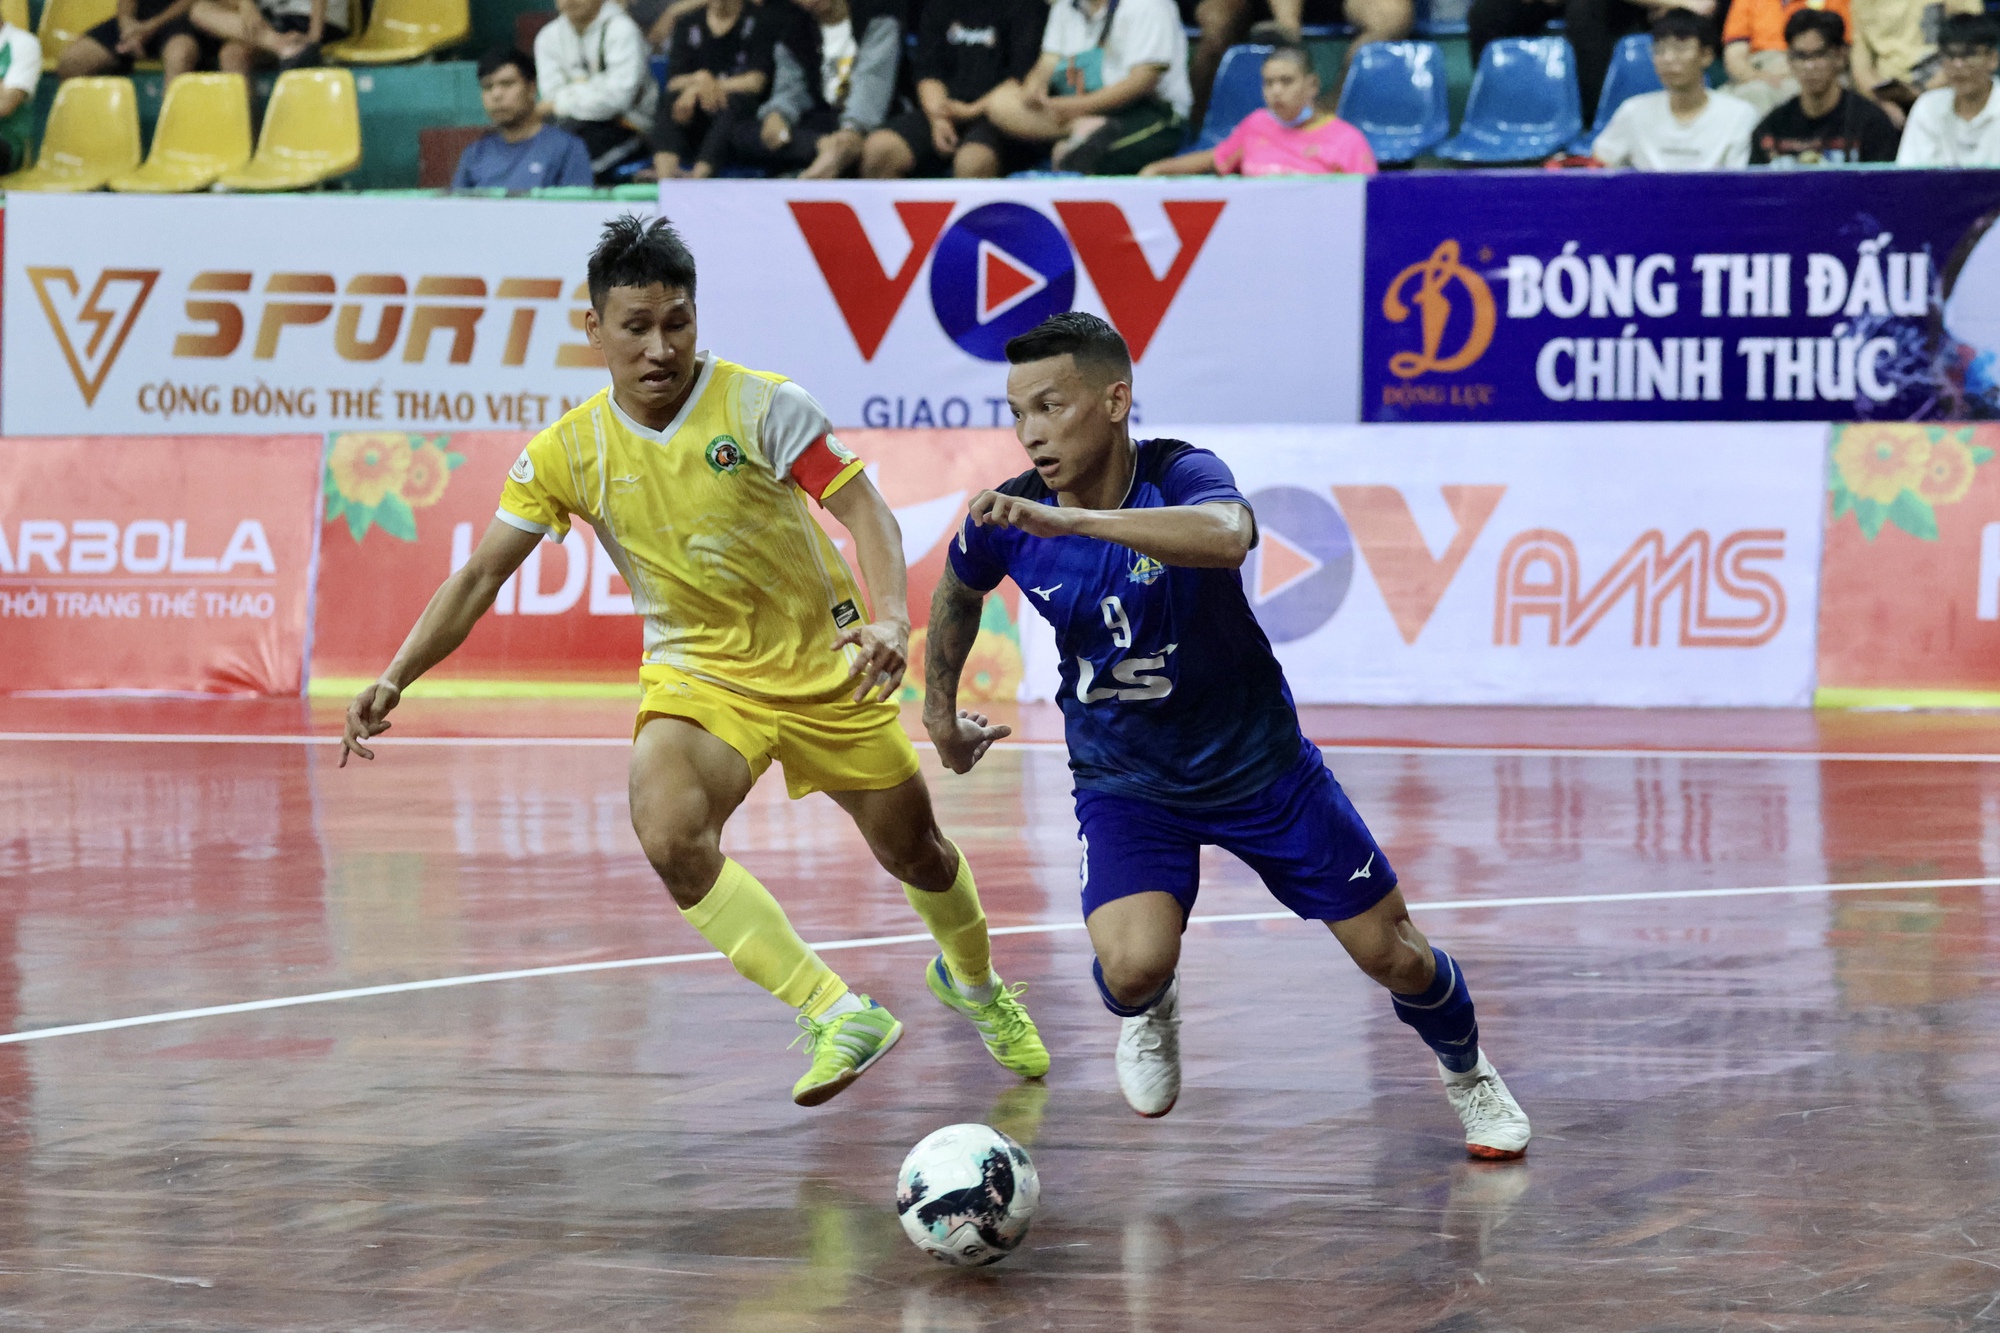 CLB Thái Sơn Nam tiếp tục trở thành cựu vương giải futsal quốc nội - Ảnh 2.